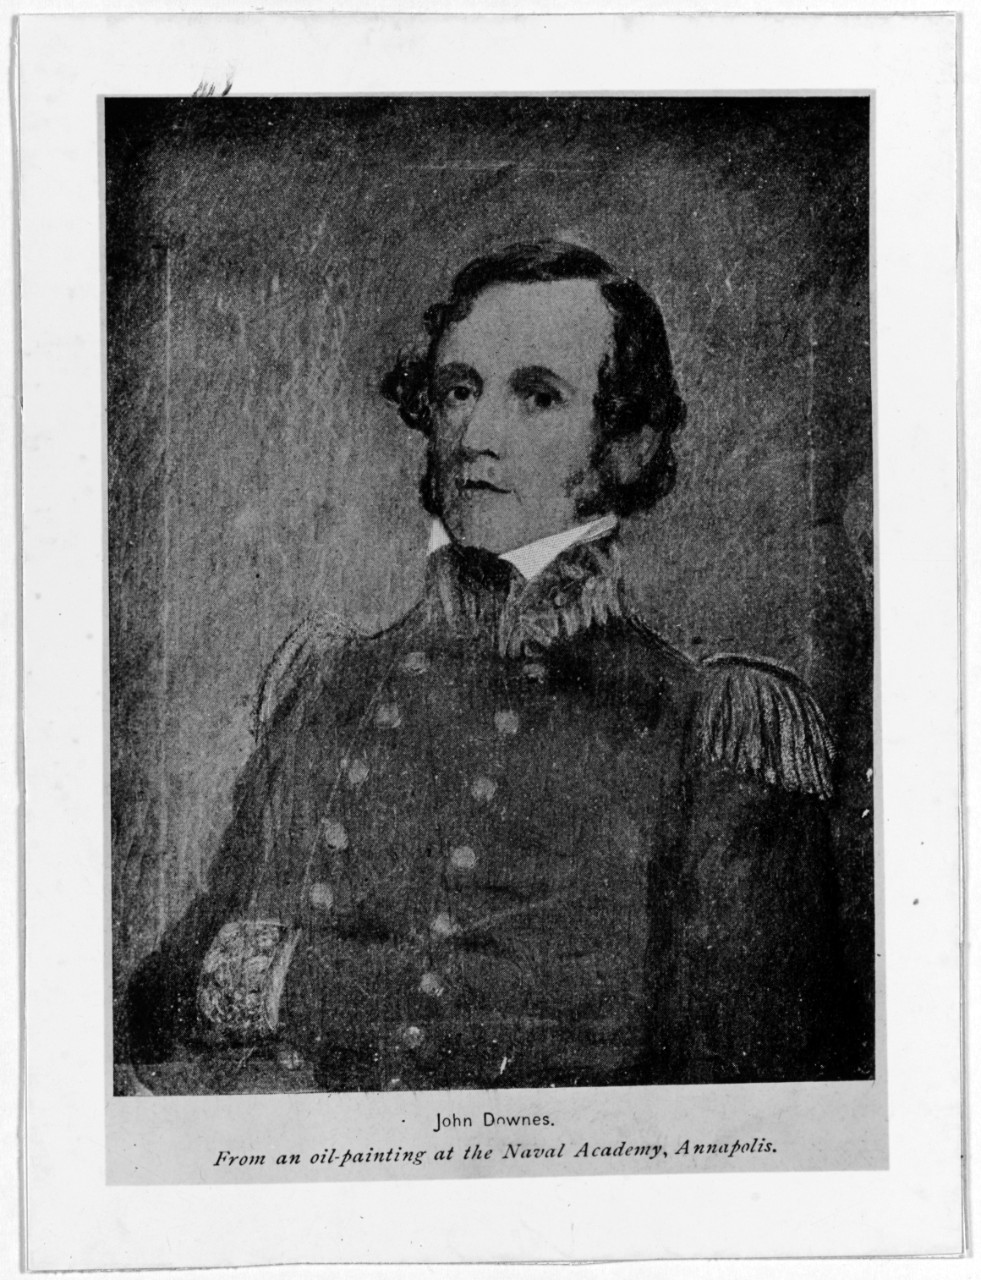 John Downes, Commodore, USN